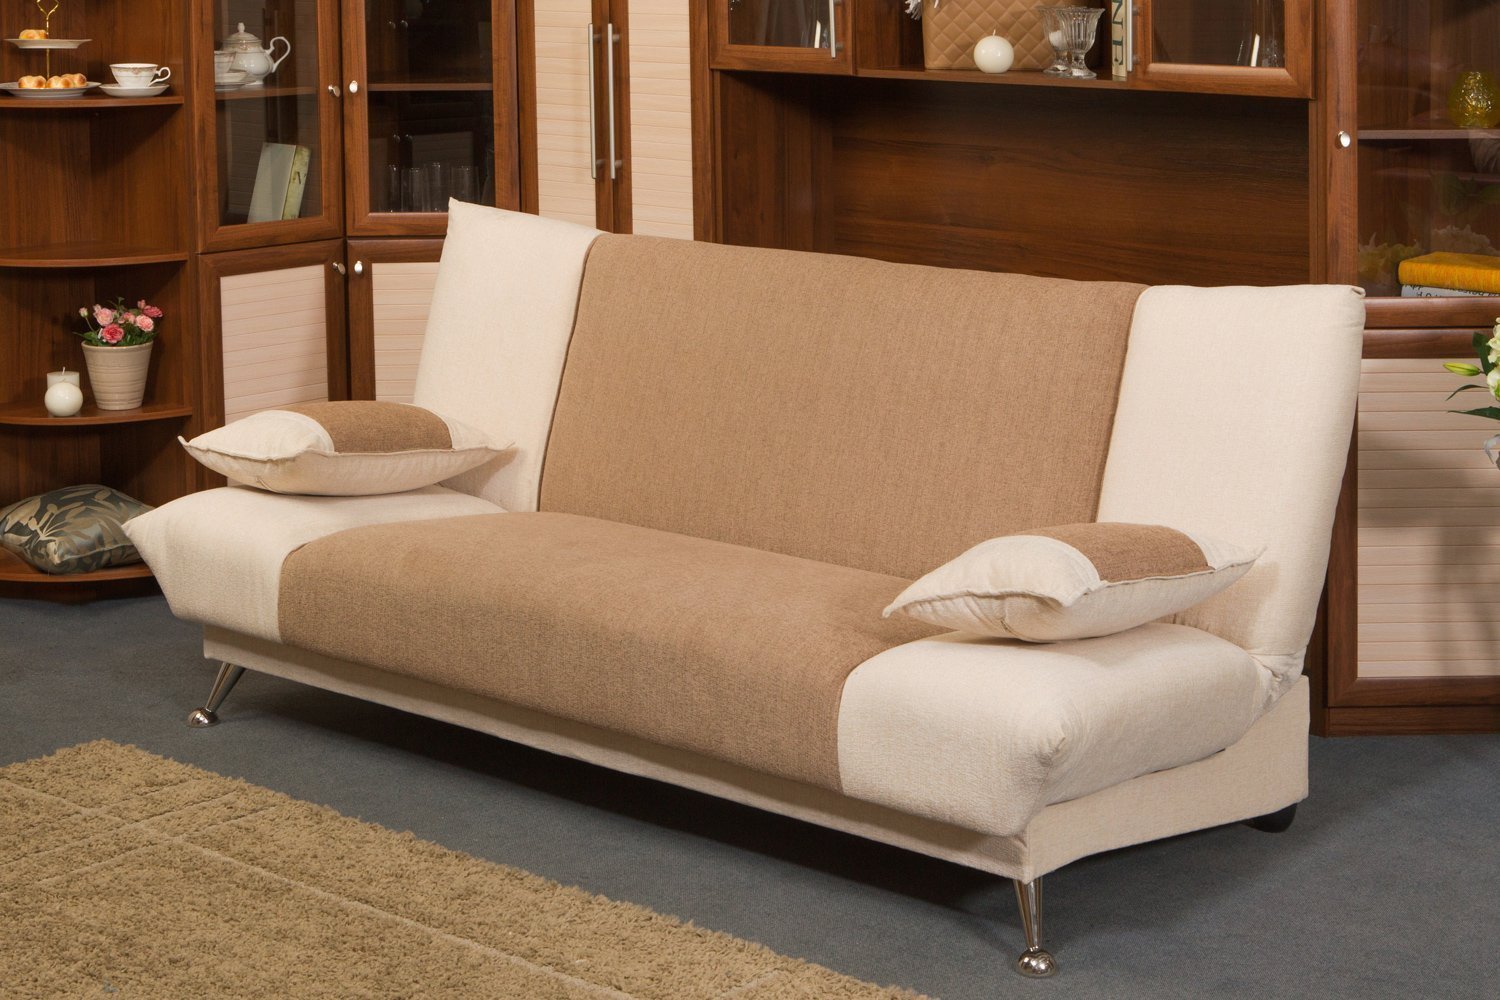 Сохраняйте пространство: диван-книжка в интерьере маленькой квартиры